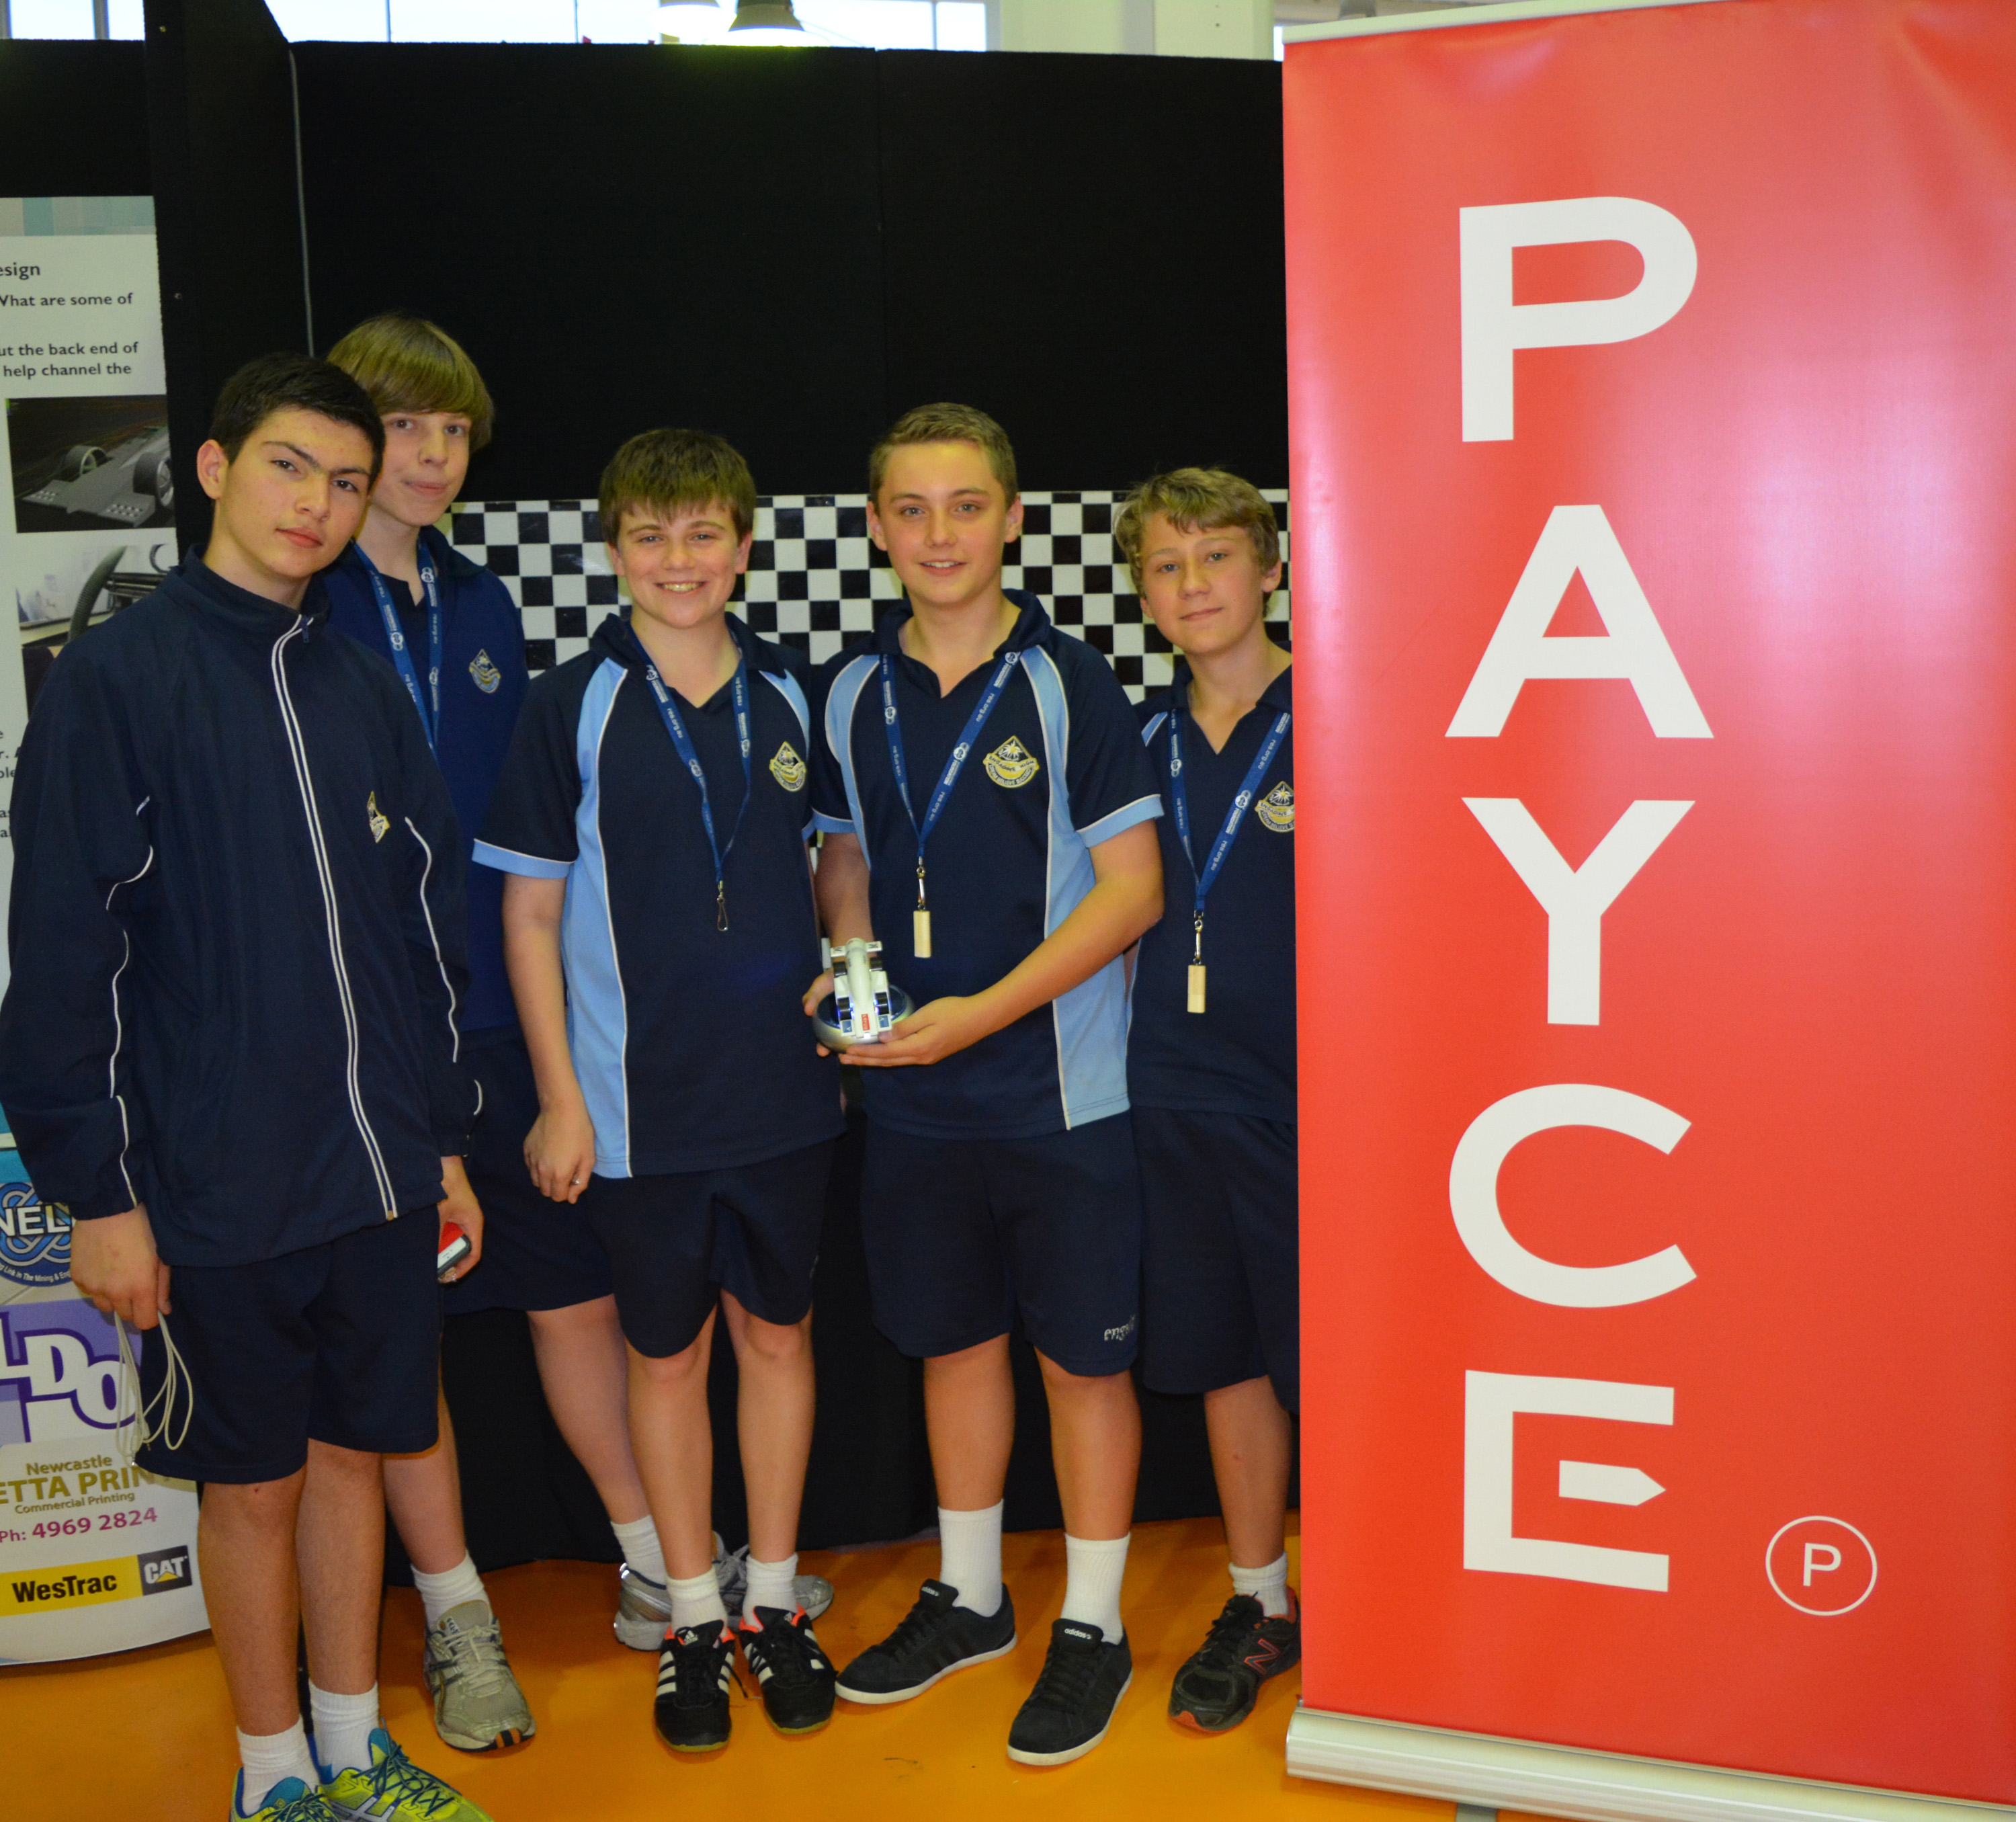 PAYCE Helps School F1 Racing Team Get On The Grid